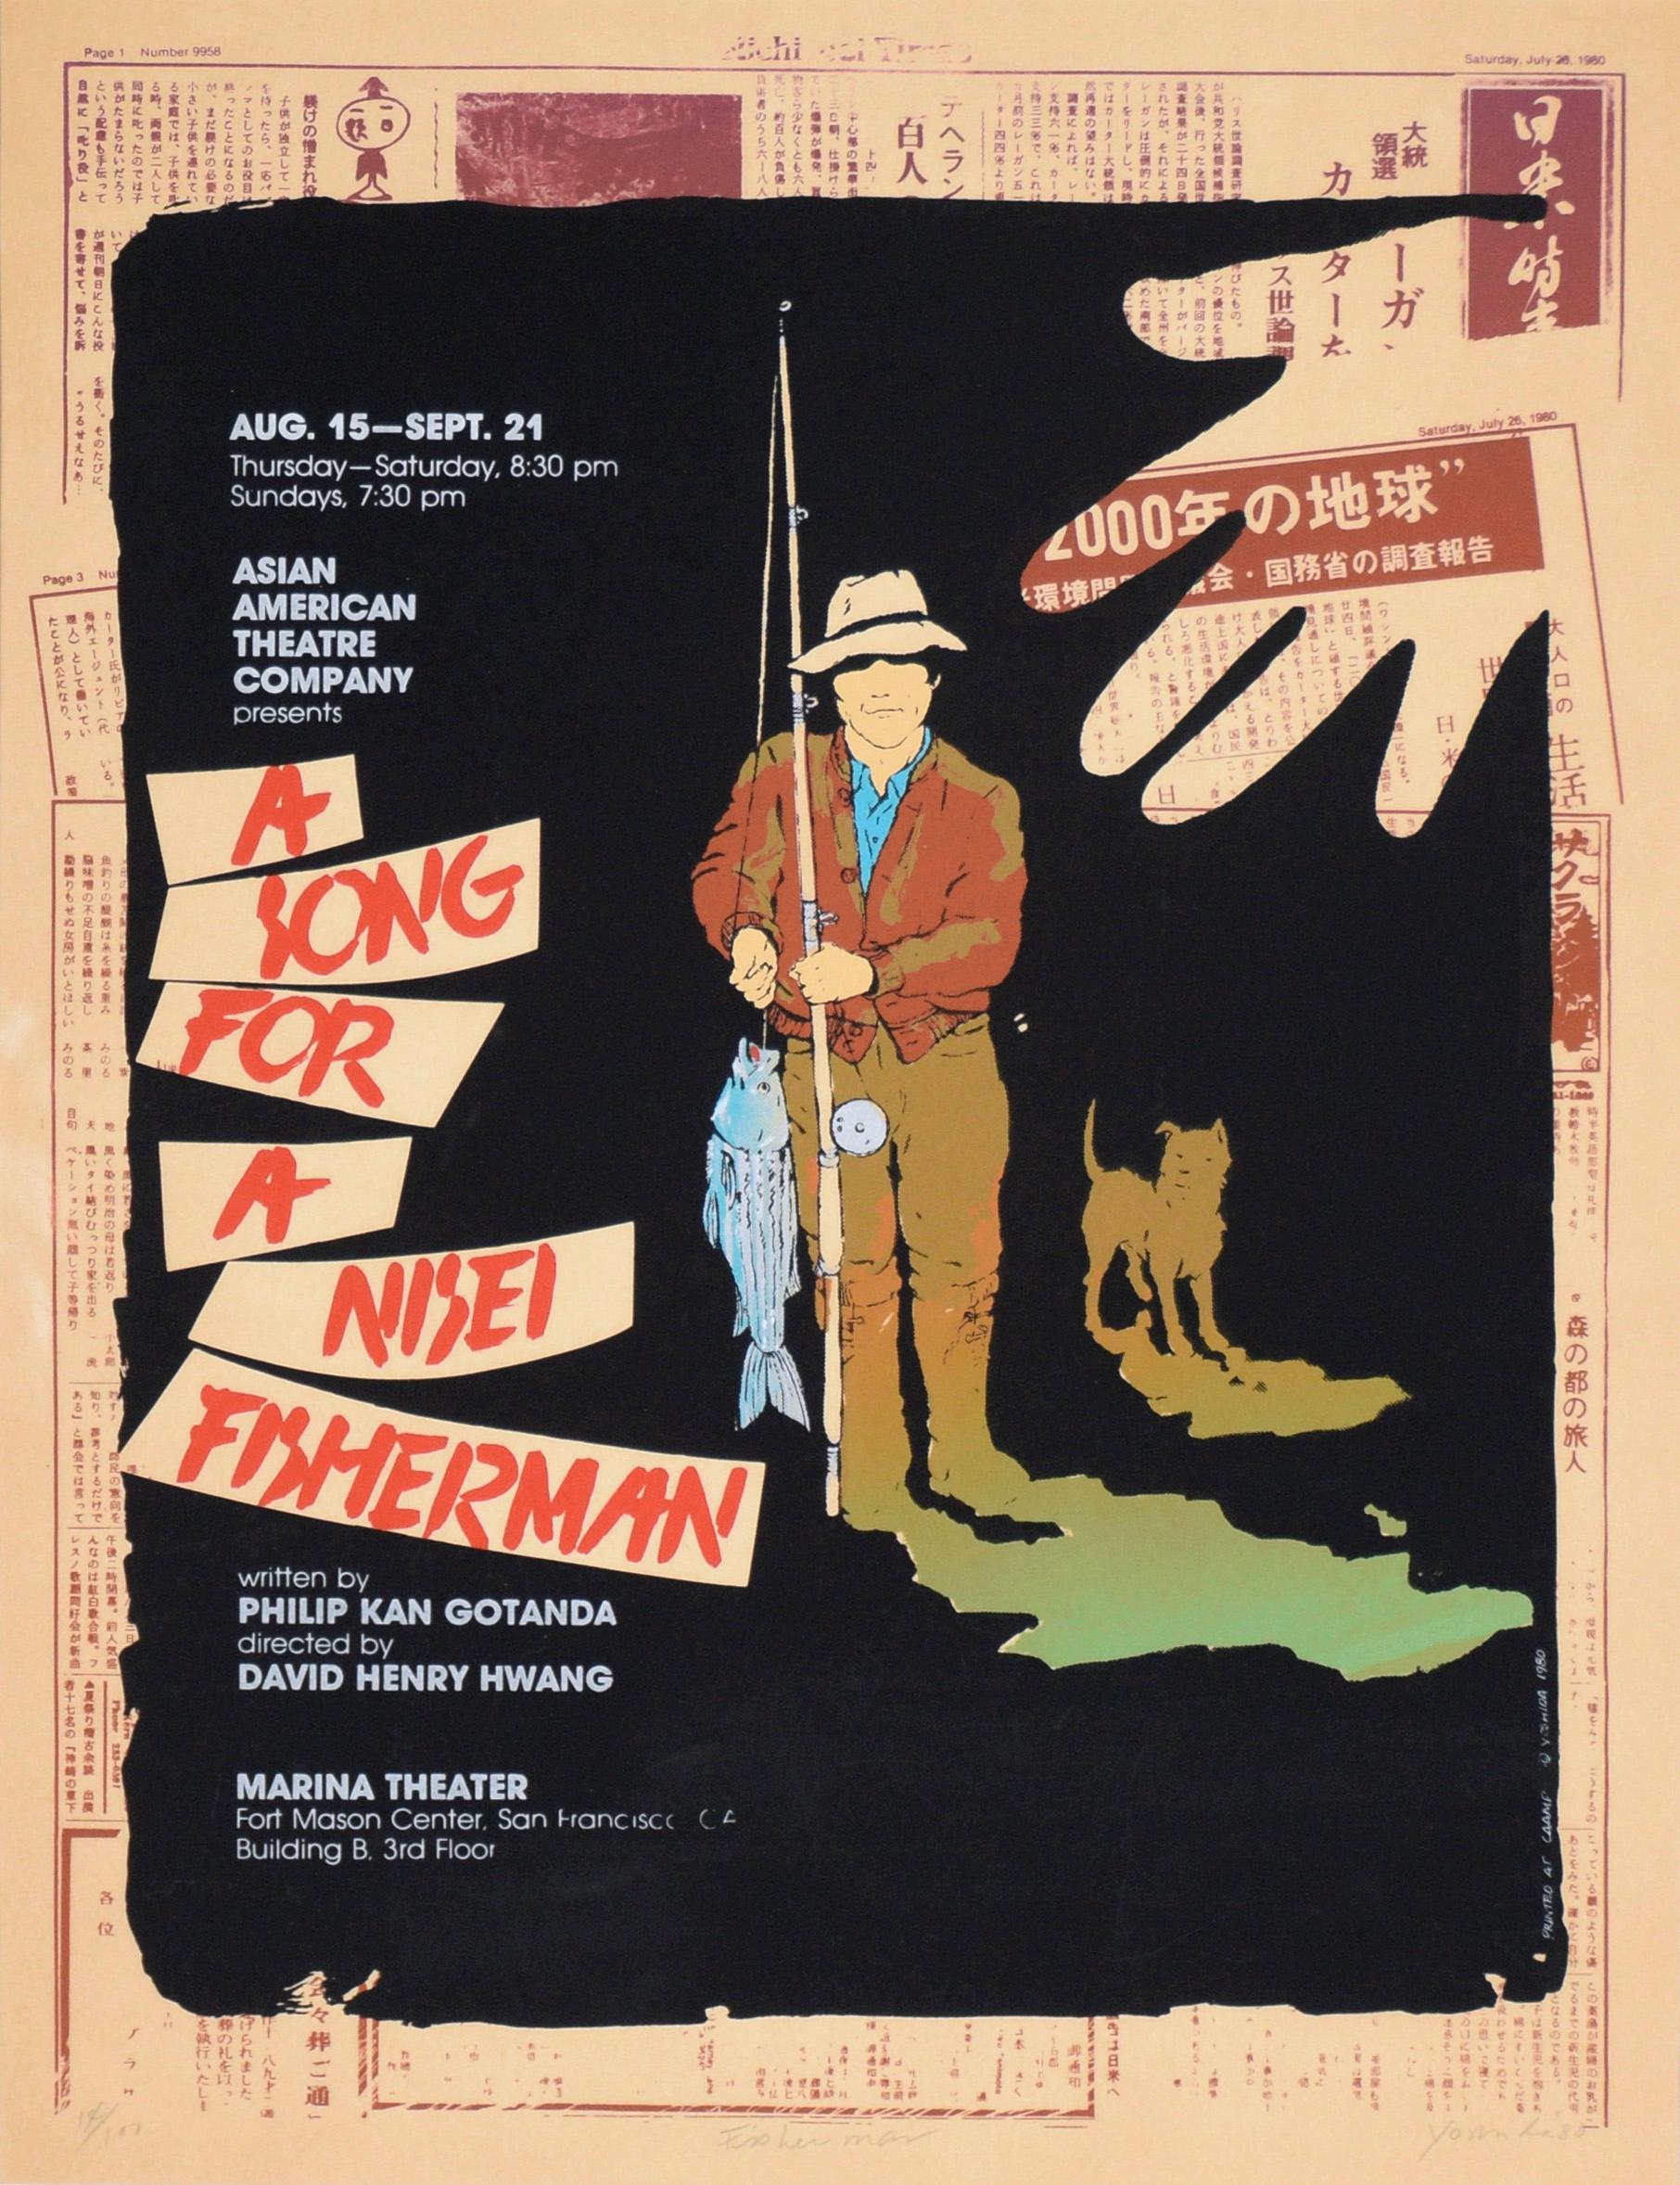 Poster „A Song for a Nesei Fisherman“, Plakat, limitierte Auflage, Siebdruck #14 von 100 Stück – Print von Chester Yoshida